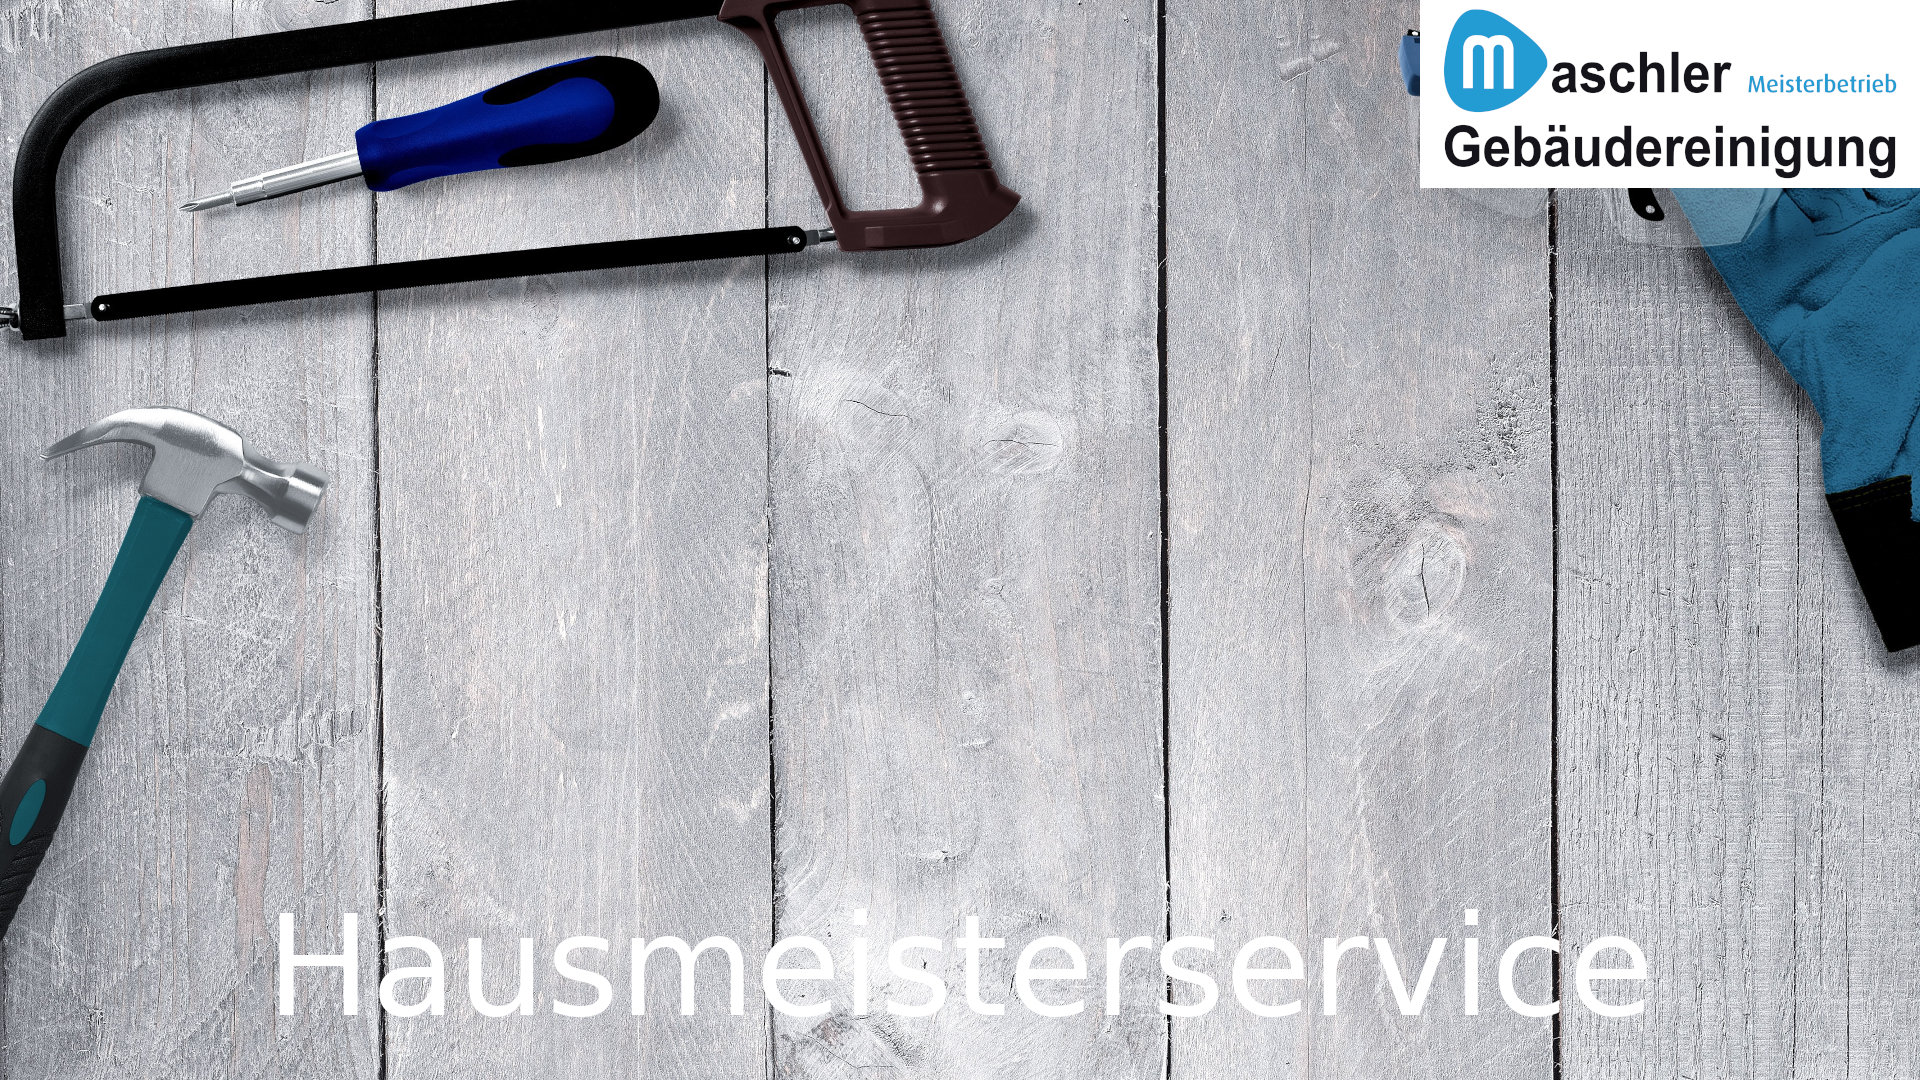 Hausmeisterservice - Gebäudereinigung Maschler GmbH